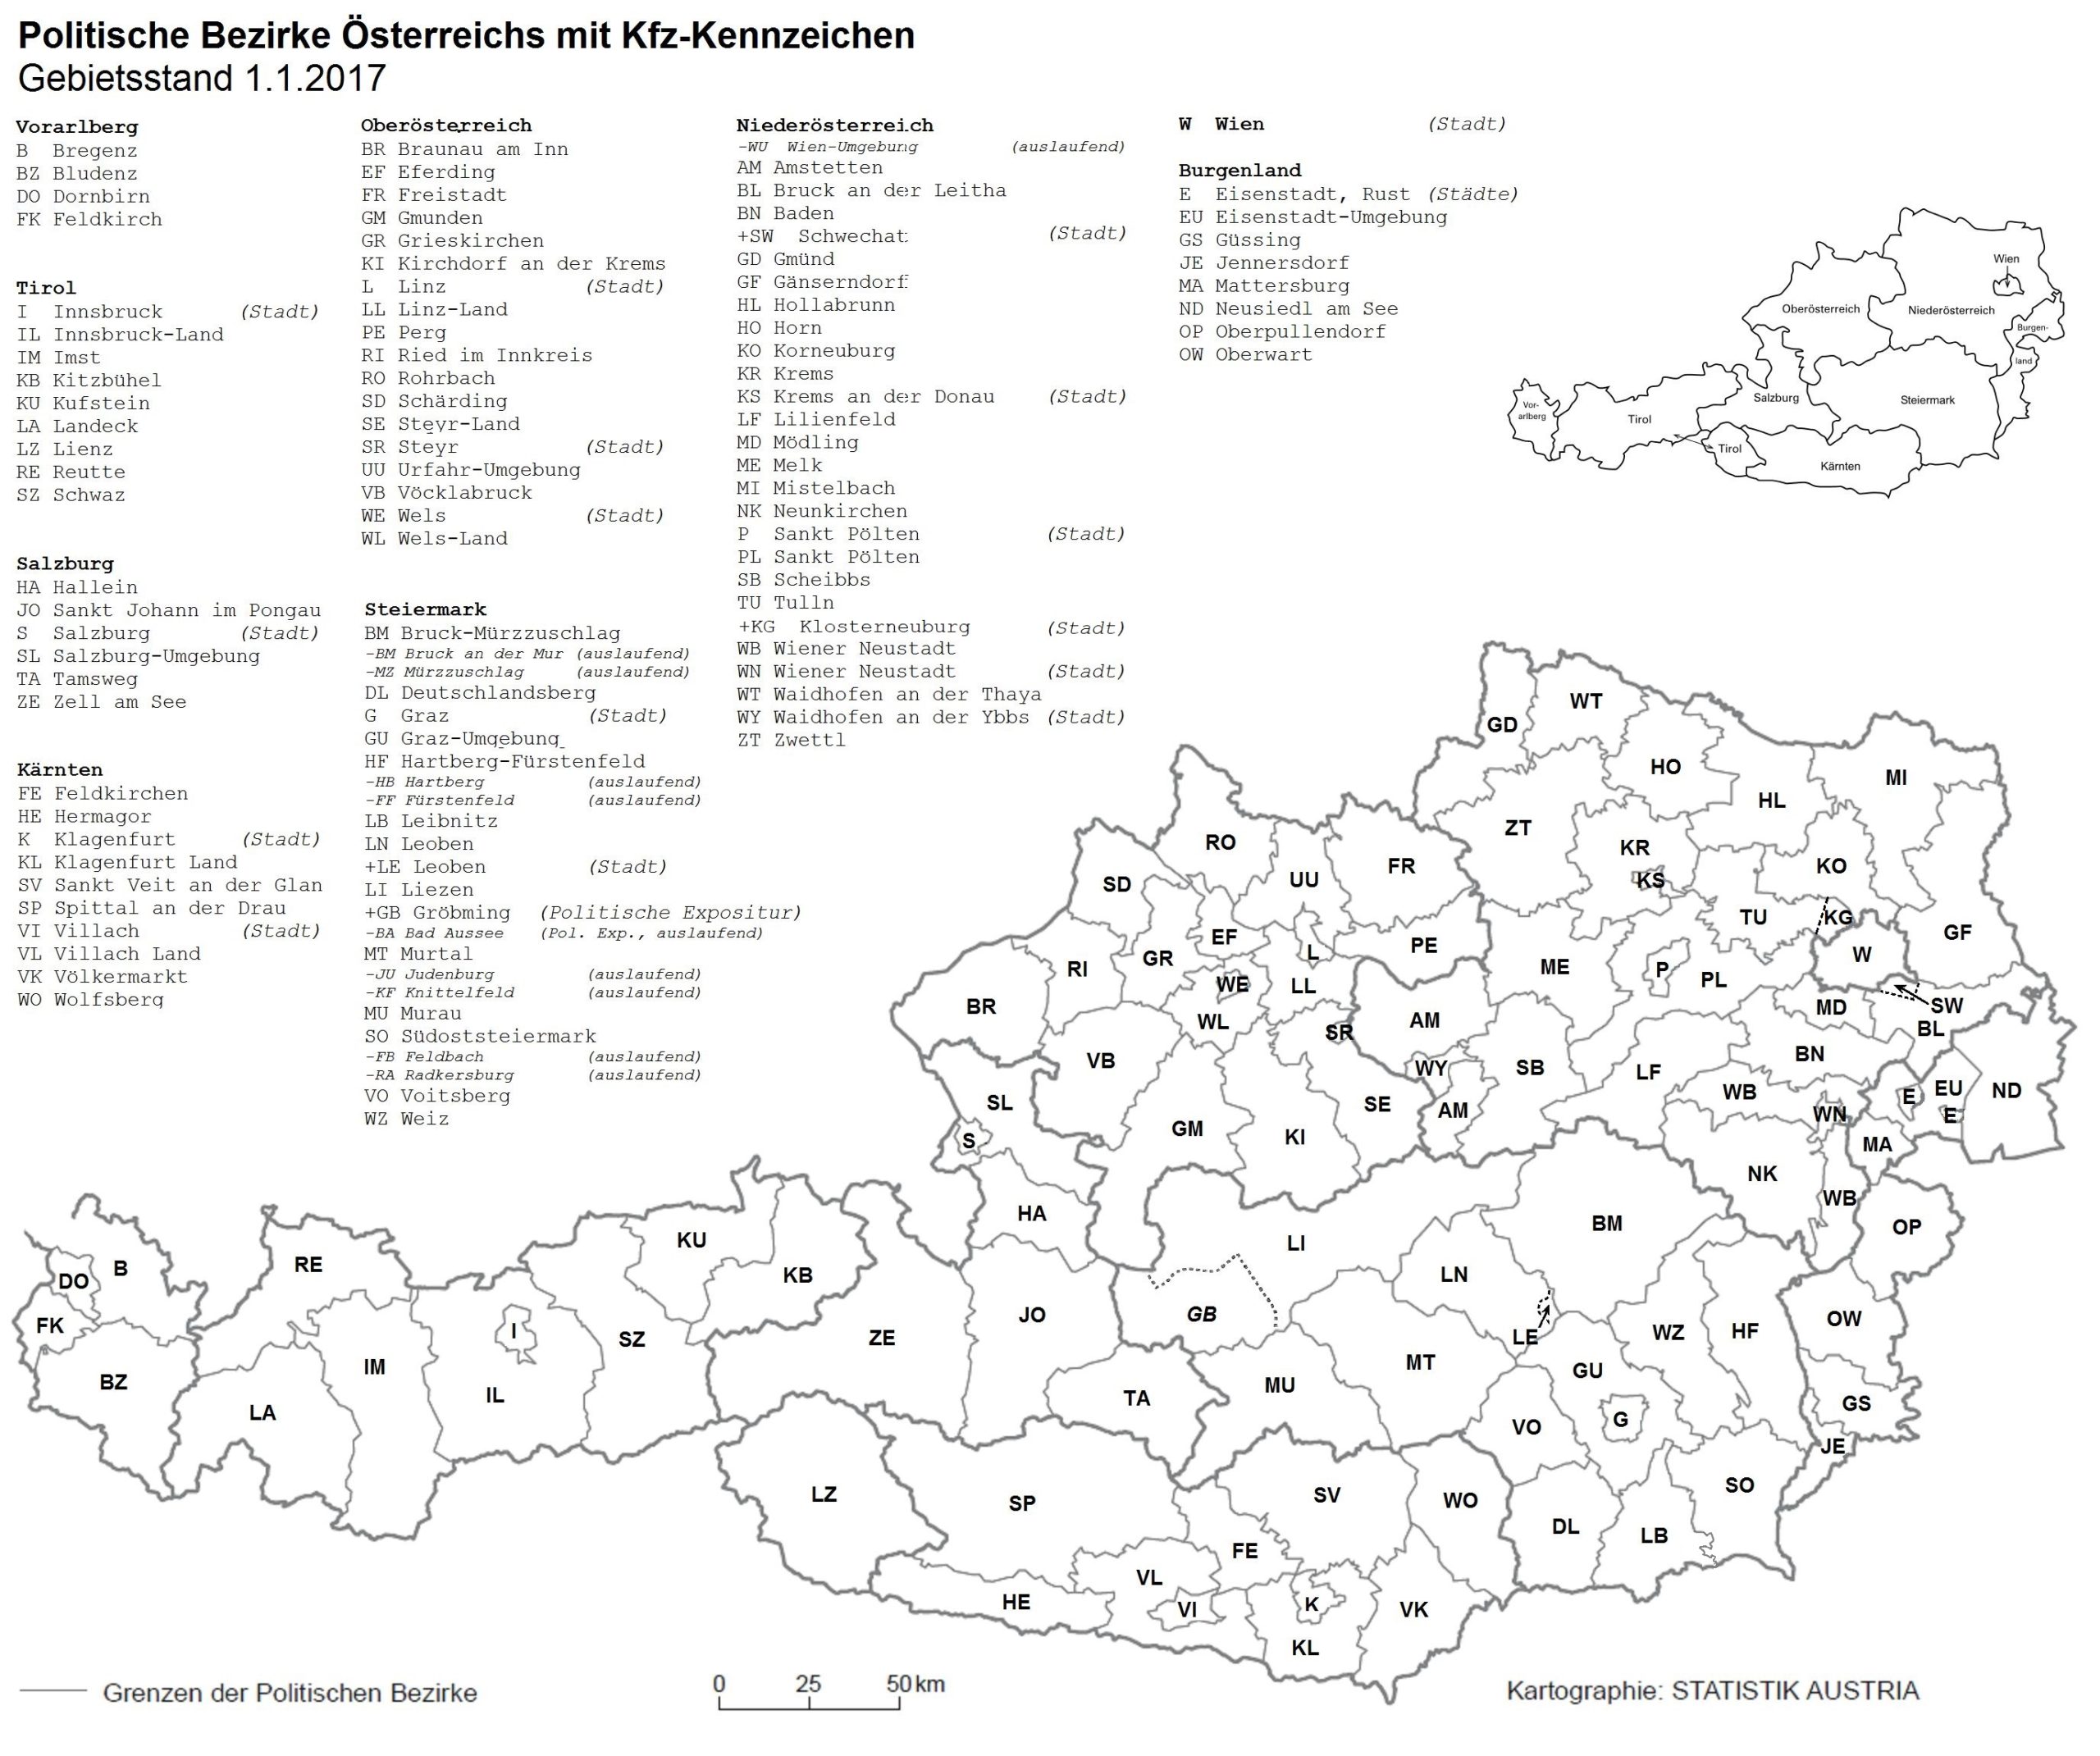 Územní kódy rakouských registračních značek, autor: Rainer82, CC BY-SA 3.0